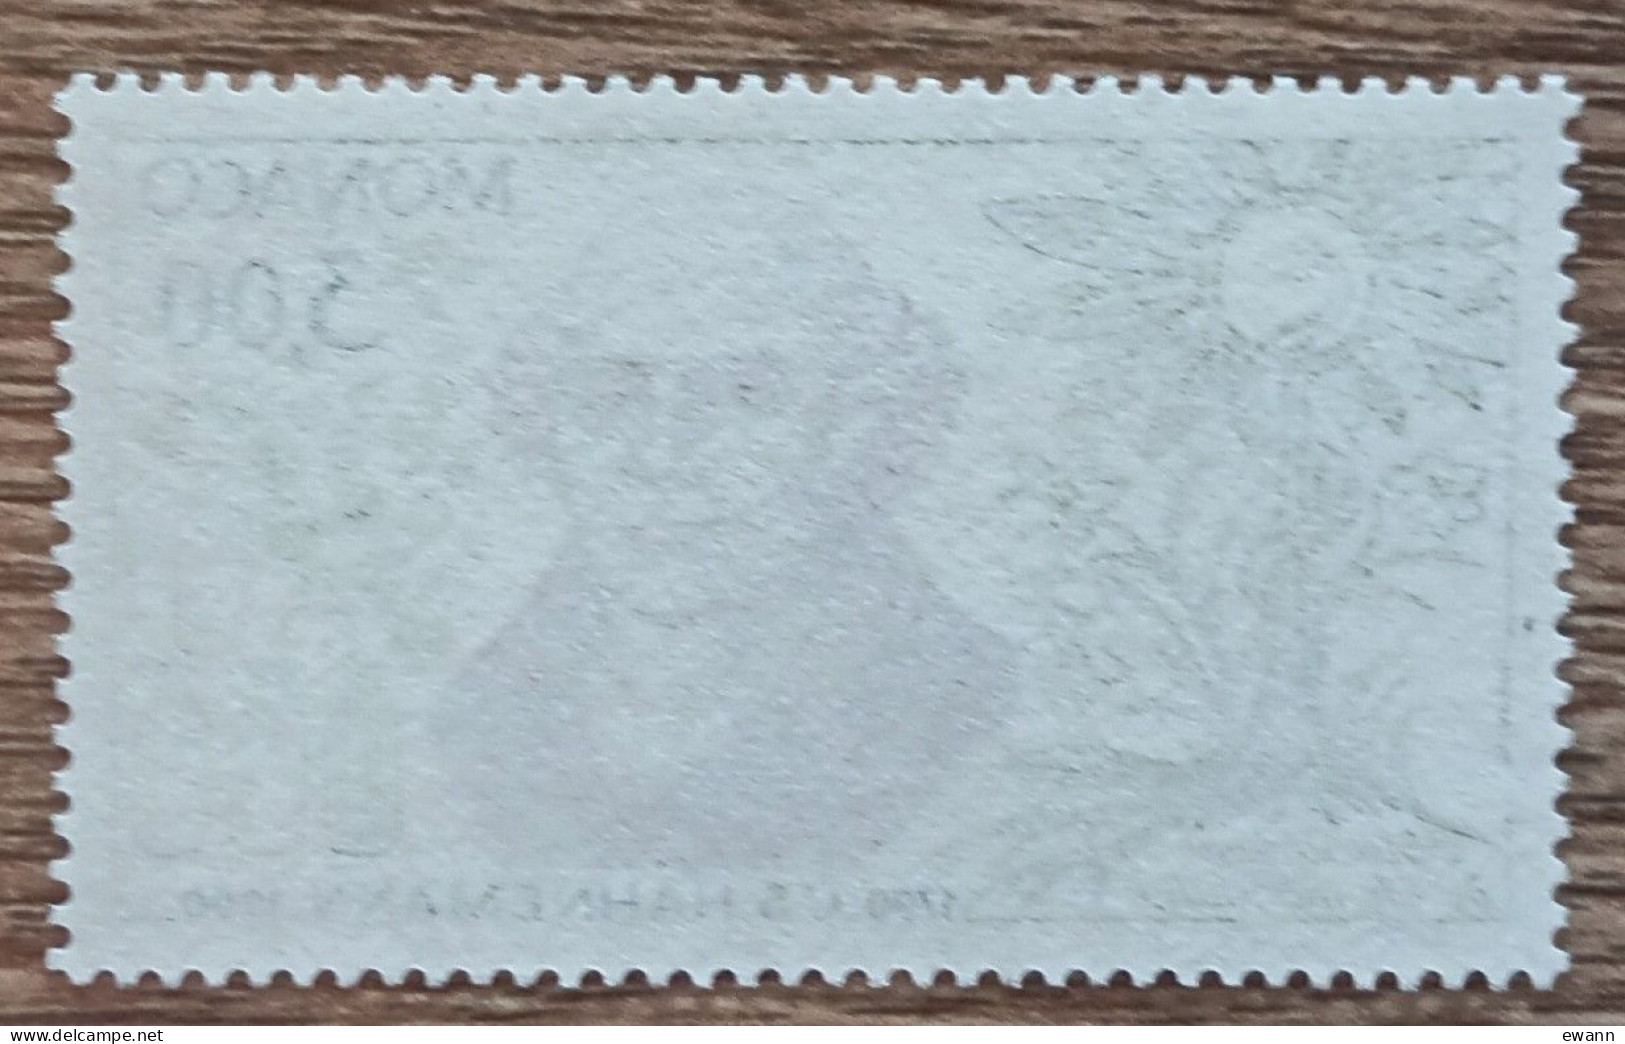 Monaco - YT N°1739 - Découverte De L'homéopathie / S. Hahnemann - 1990 - Neuf - Unused Stamps